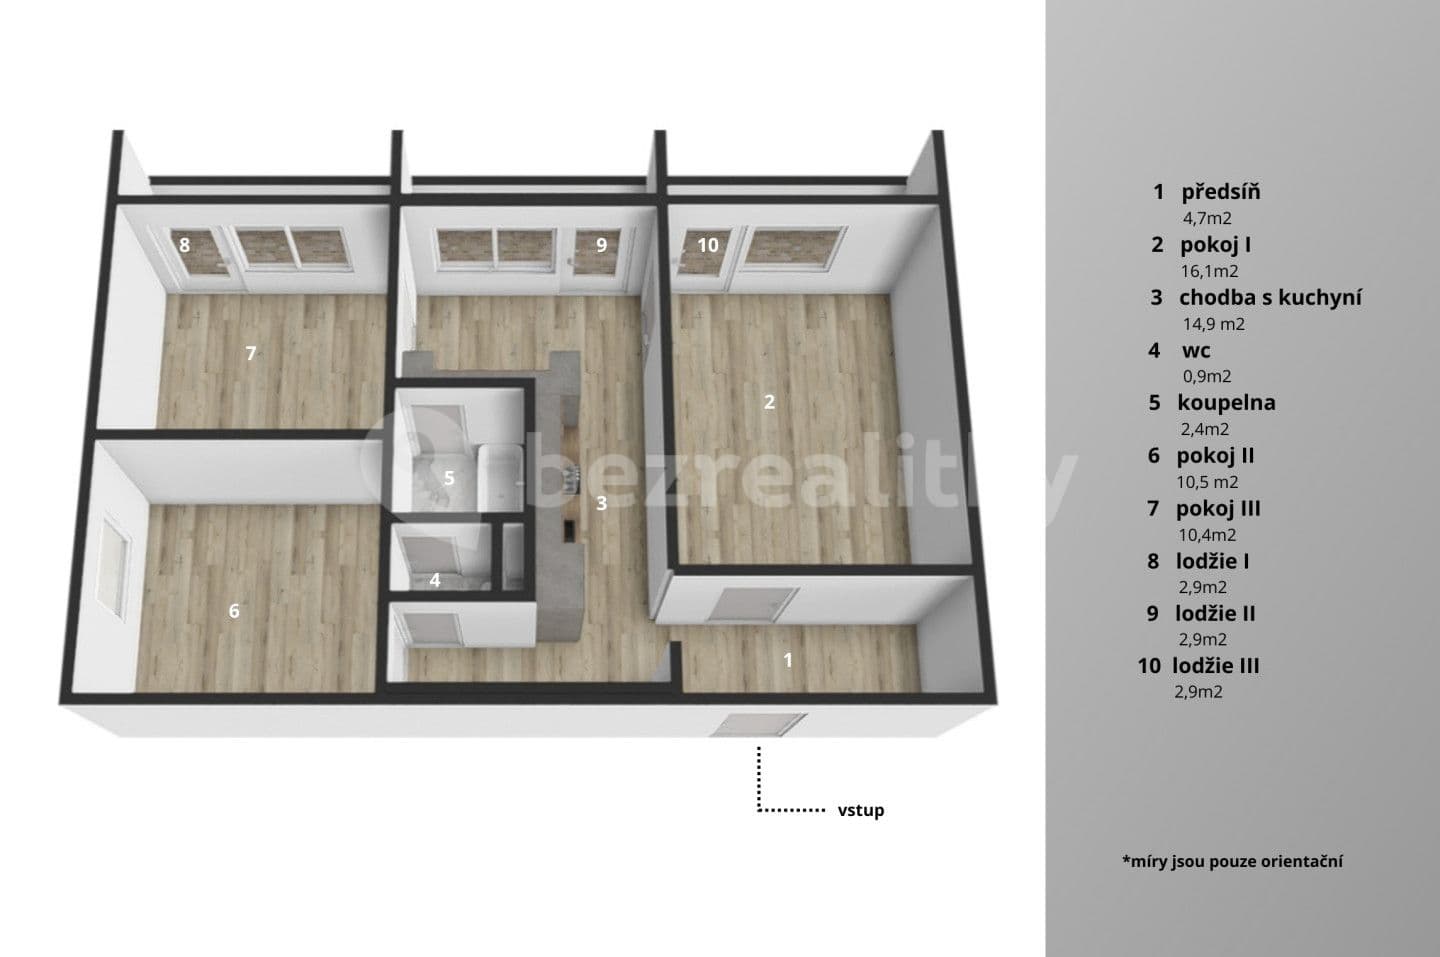 3 bedroom flat for sale, 63 m², Budovatelská, Klášterec nad Ohří, Ústecký Region